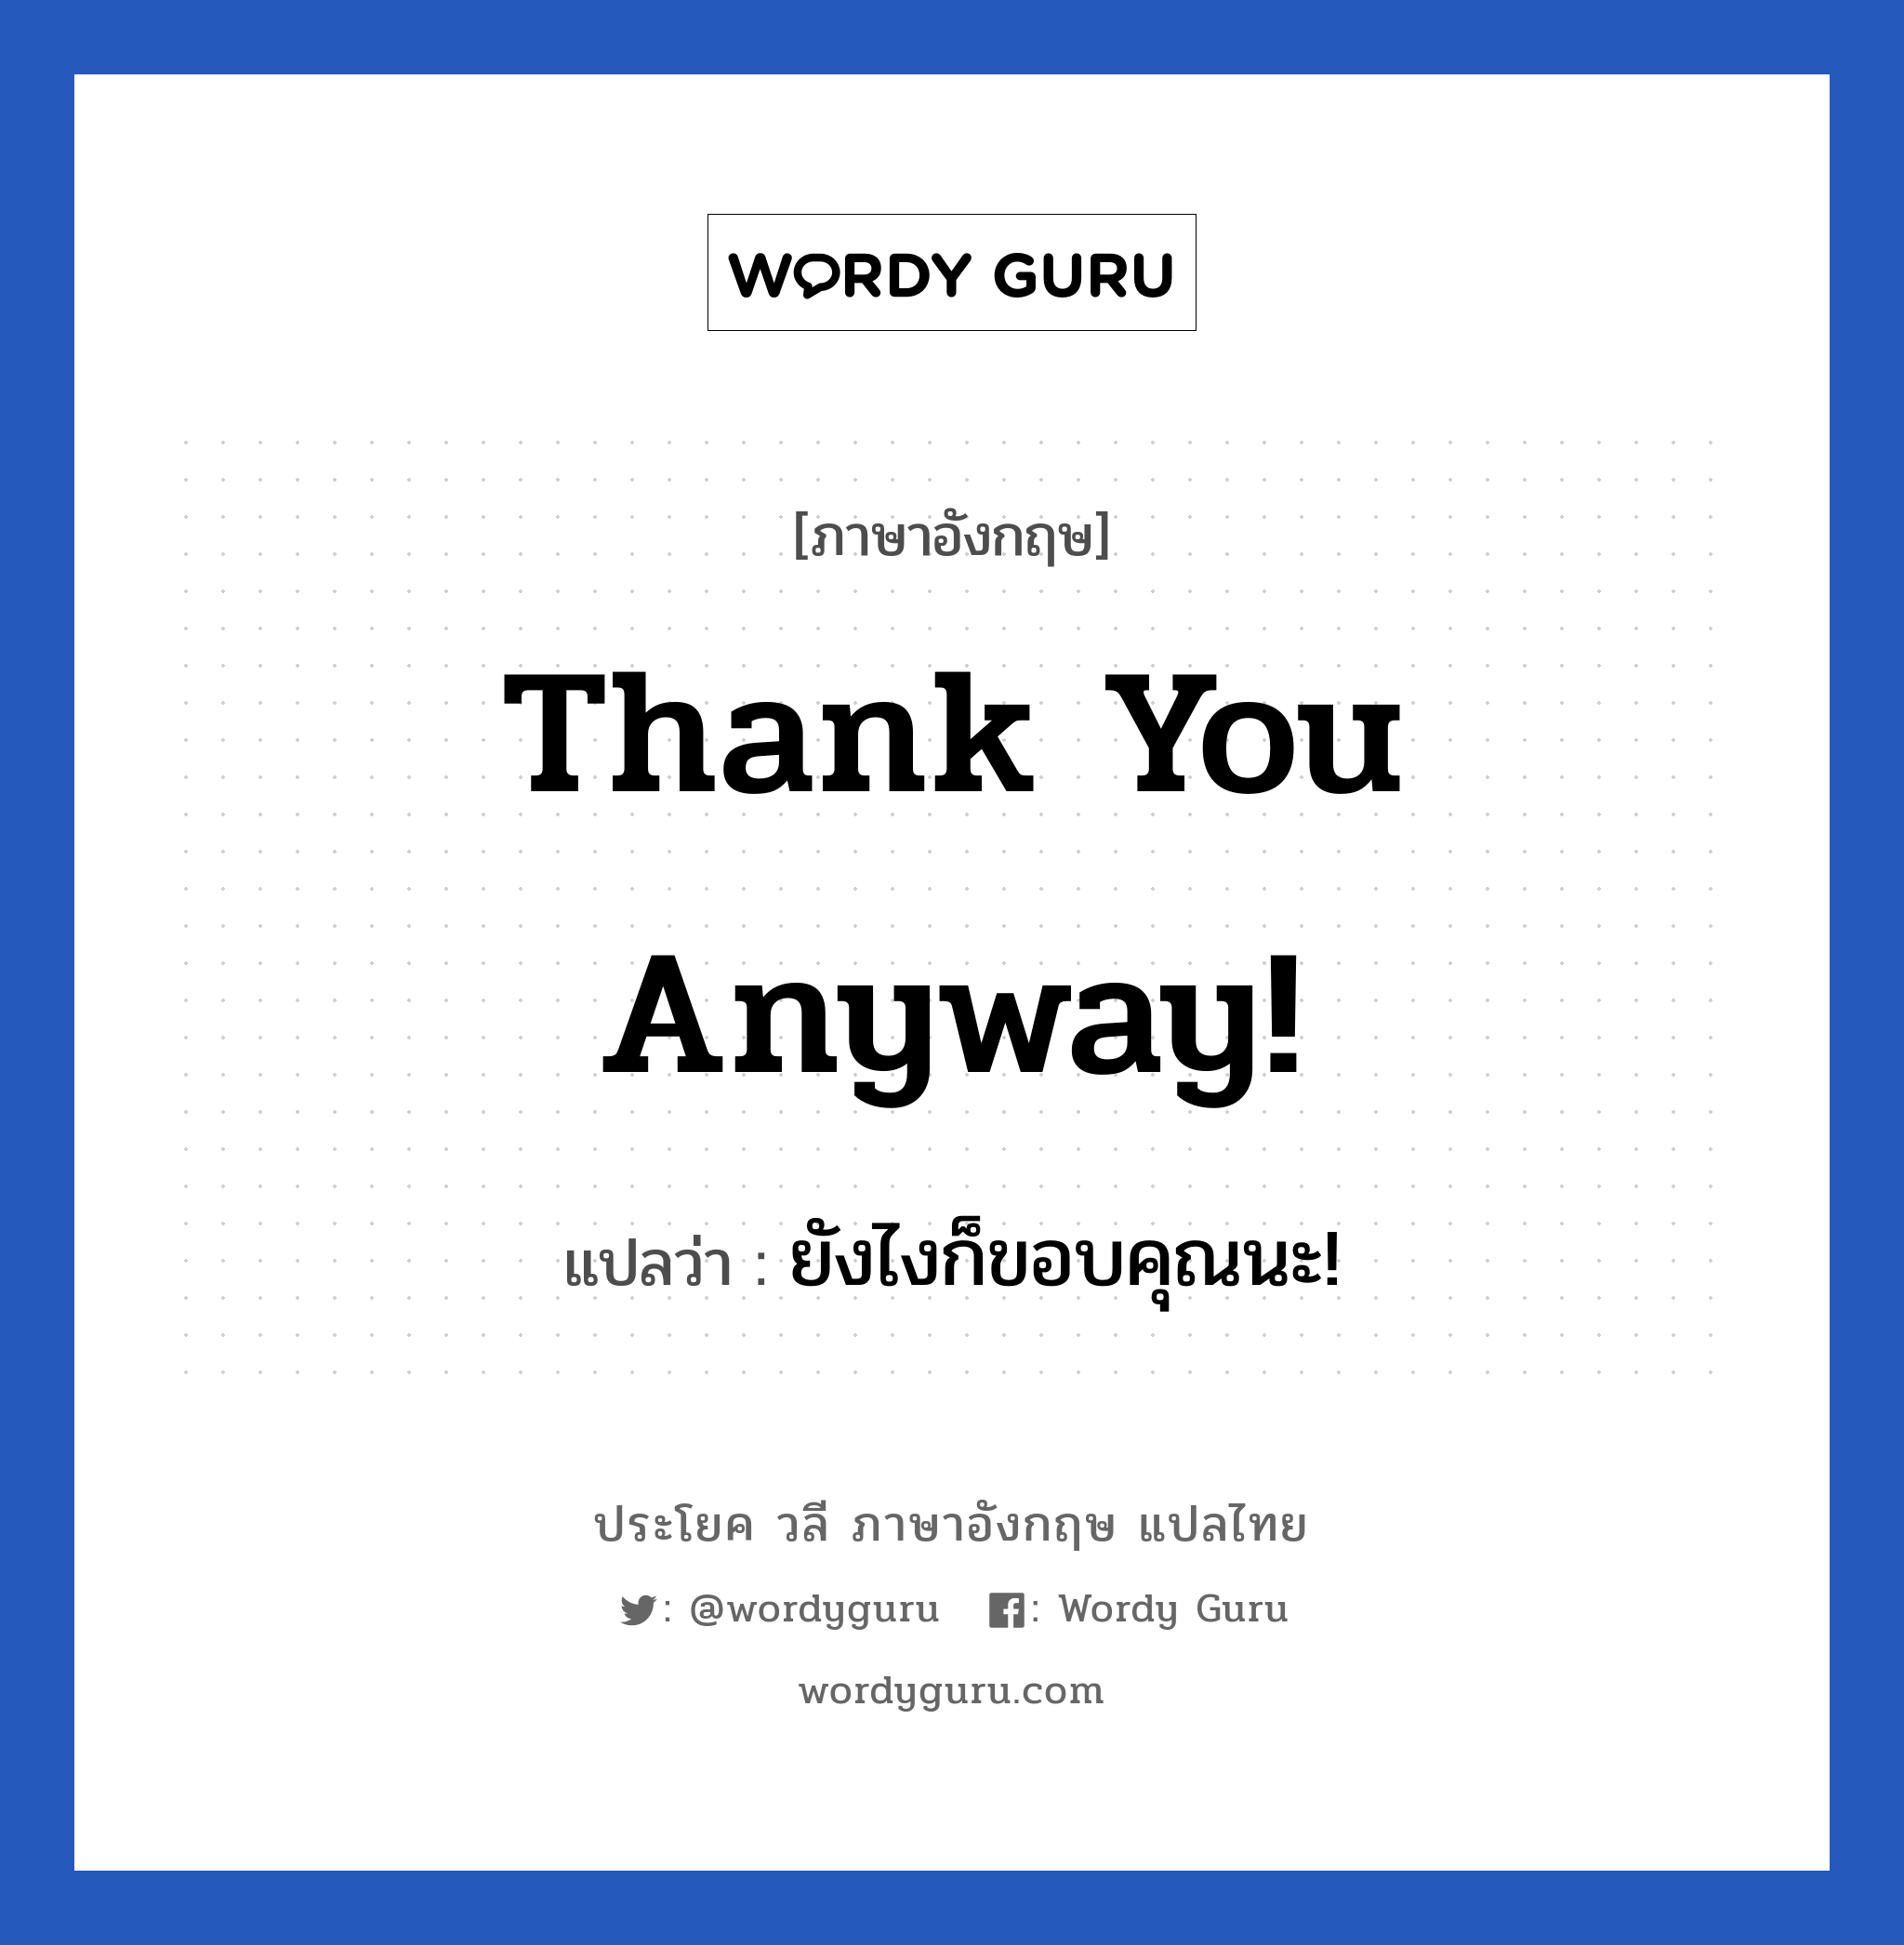 ยังไงก็ขอบคุณนะ! ภาษาอังกฤษ?, วลีภาษาอังกฤษ ยังไงก็ขอบคุณนะ! แปลว่า Thank you anyway!